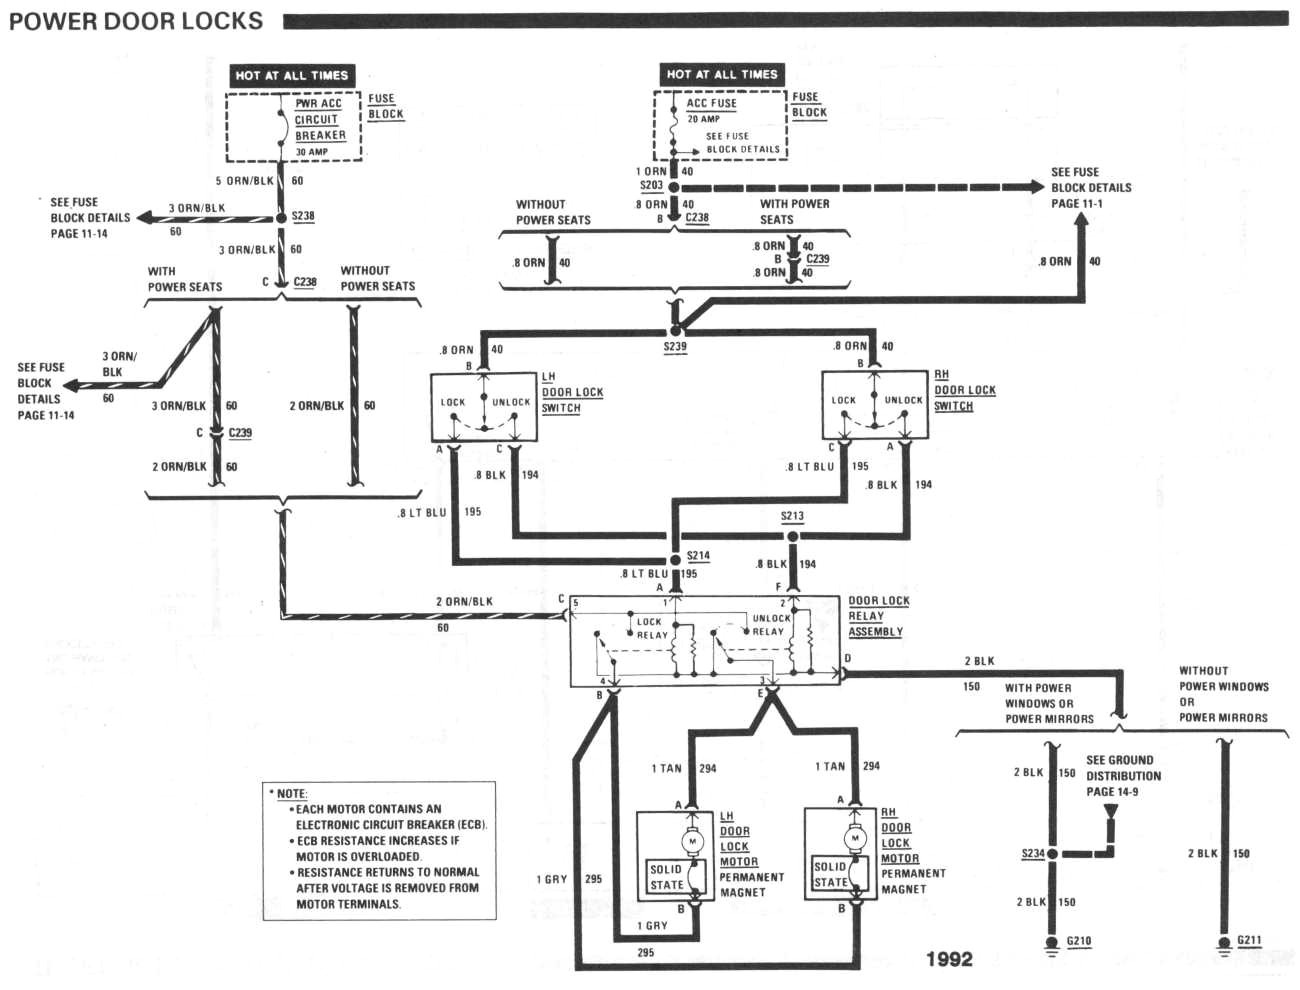 power door lock wiring diagram toyota lh113 wiring diagrams long power door lock wiring diagram toyota lh113